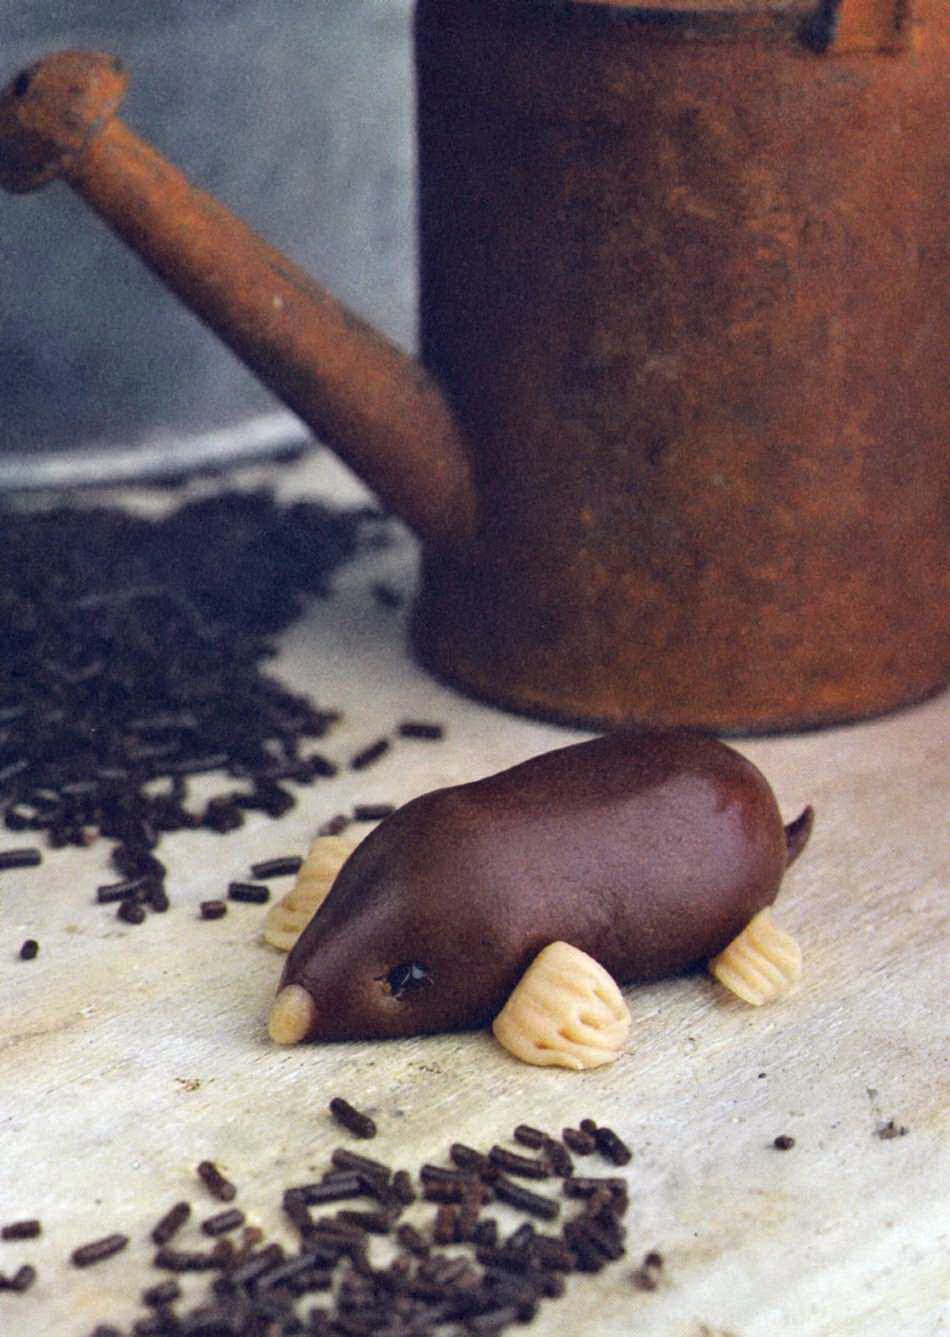 Фигурки животных из шоколада дома, своими руками. Изготовление шоколадных животных для праздничного стола дома